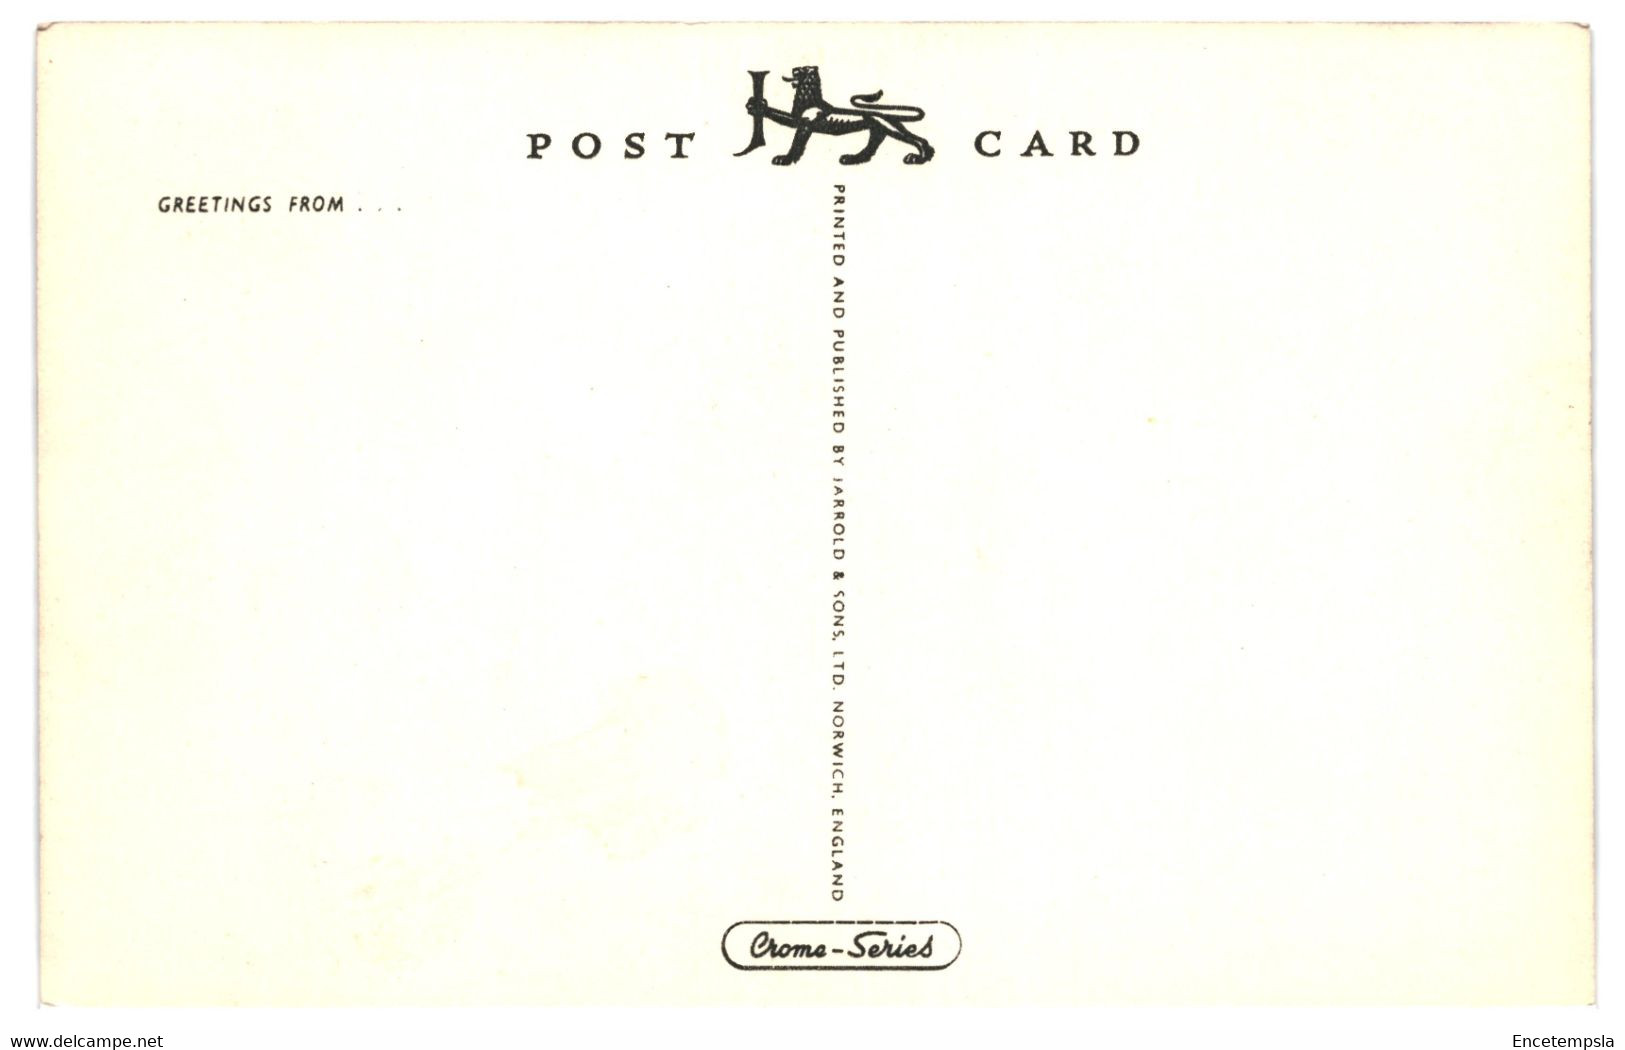 CPA - Carte postale - Lot de 50  cartes postales du Royaume Uni  - VMAngleterre-1